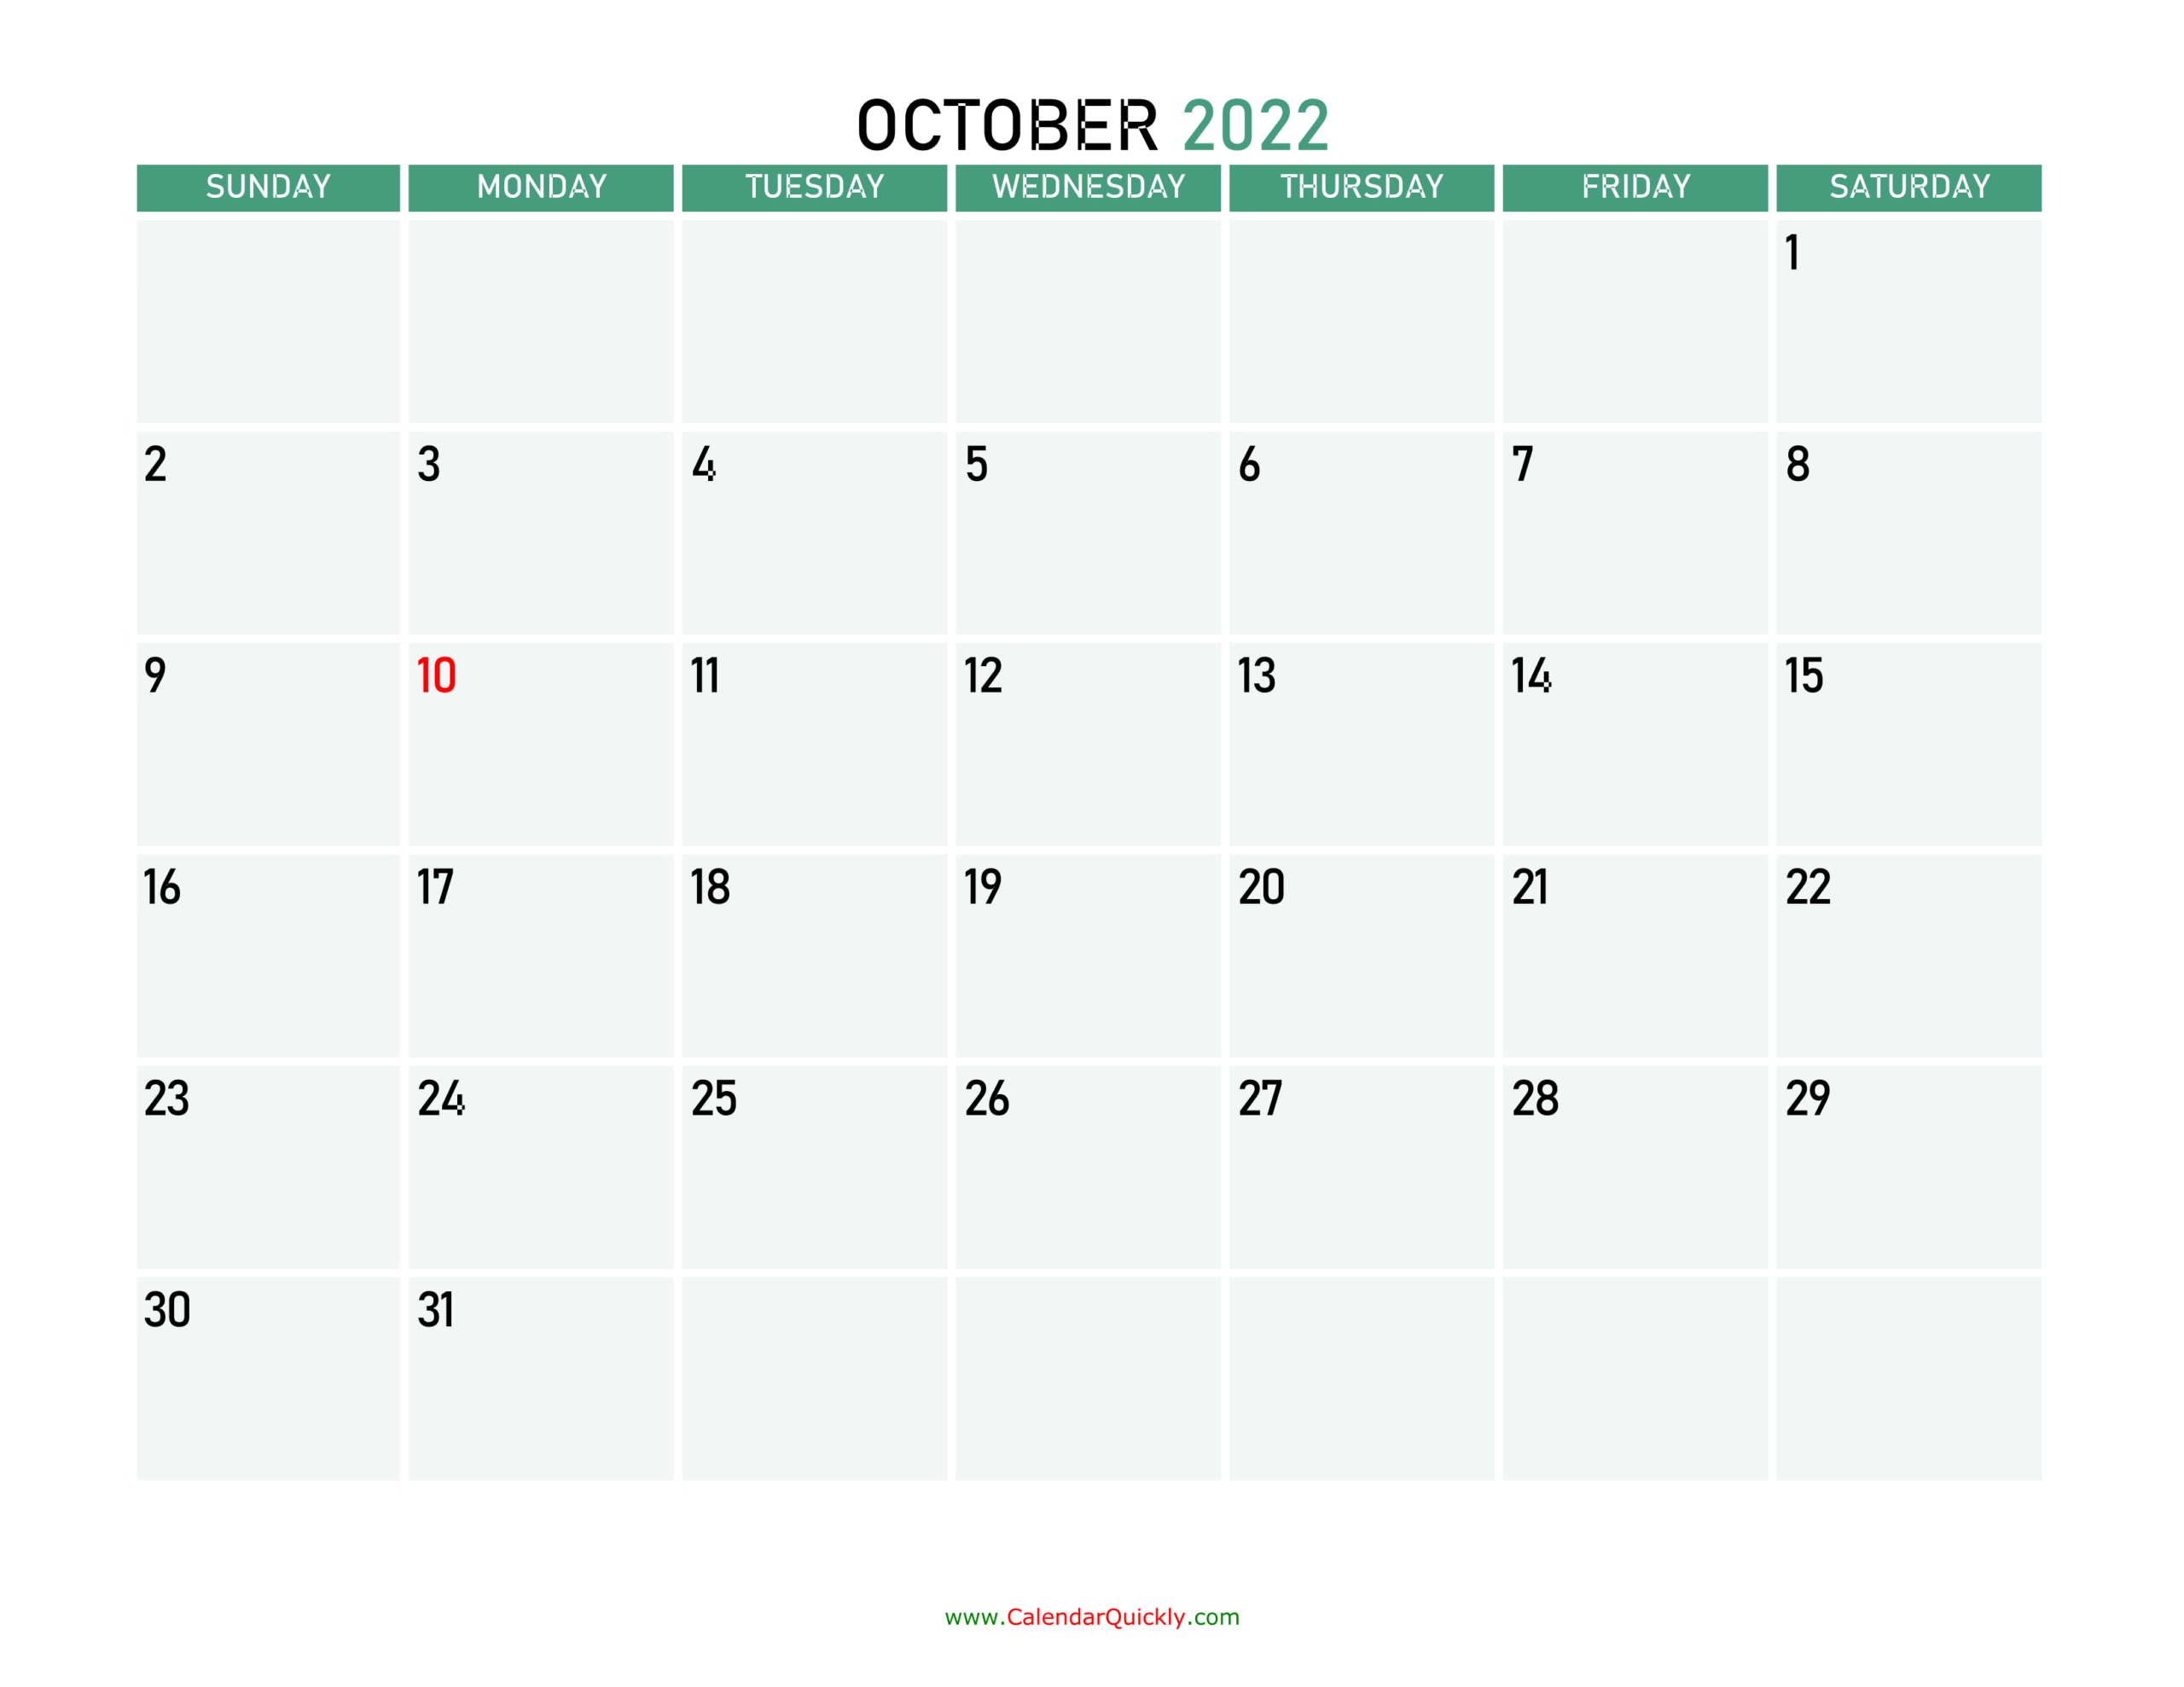 October 2022 Calendars | Calendar Quickly  November 2022 - April 2022 Calendar